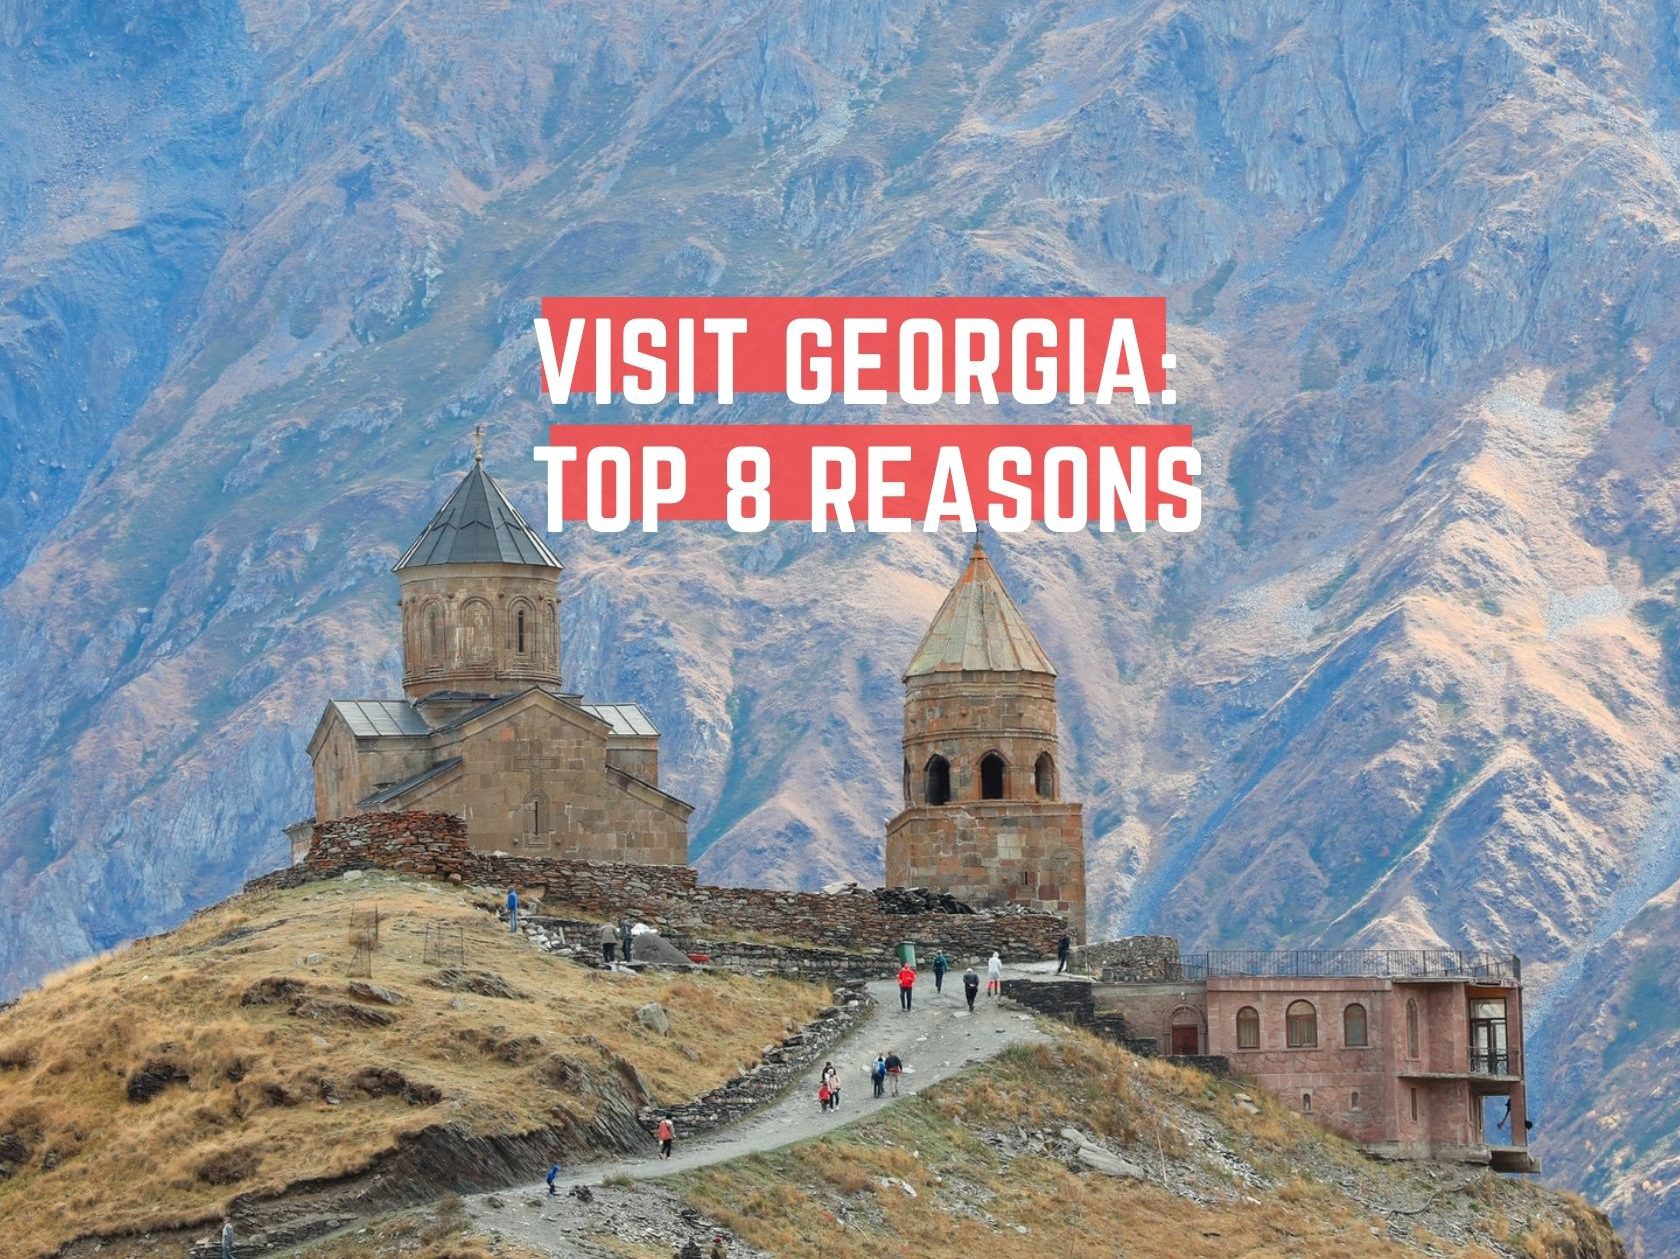 Visit Georgia: Top 8 reasons